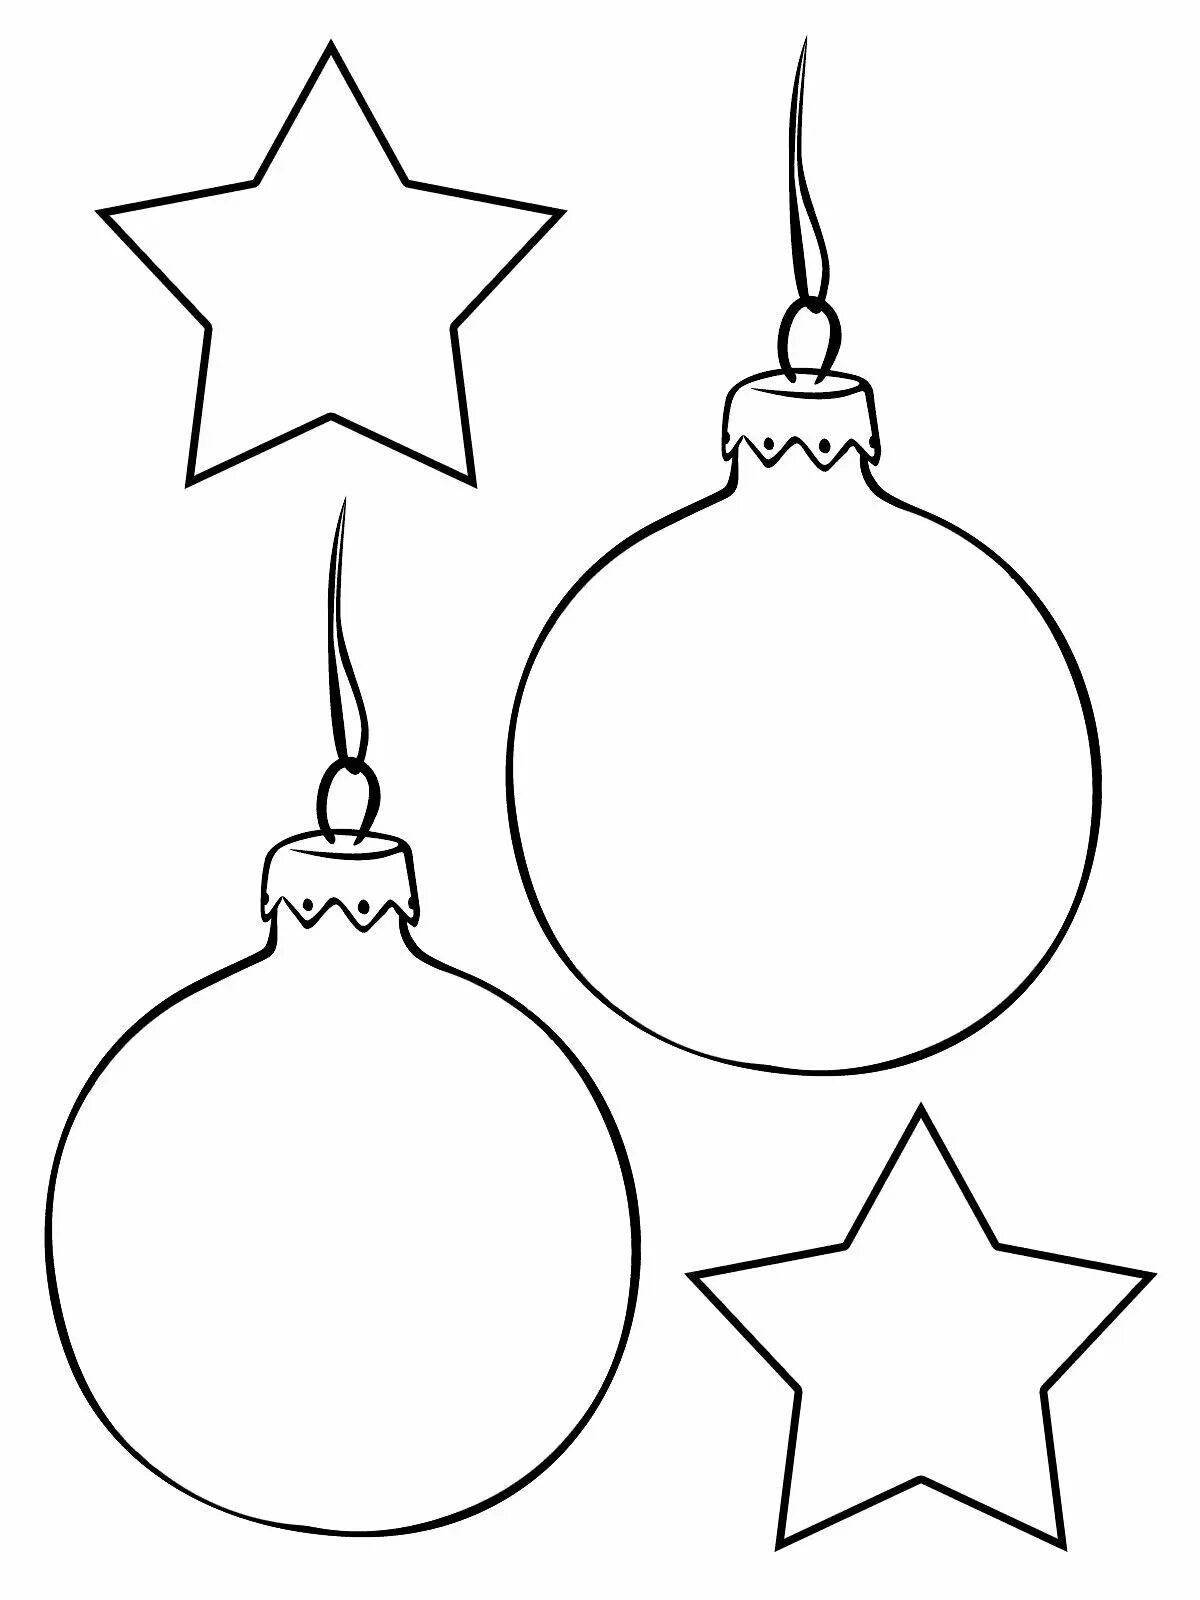 Whimsical Christmas ball coloring for kids